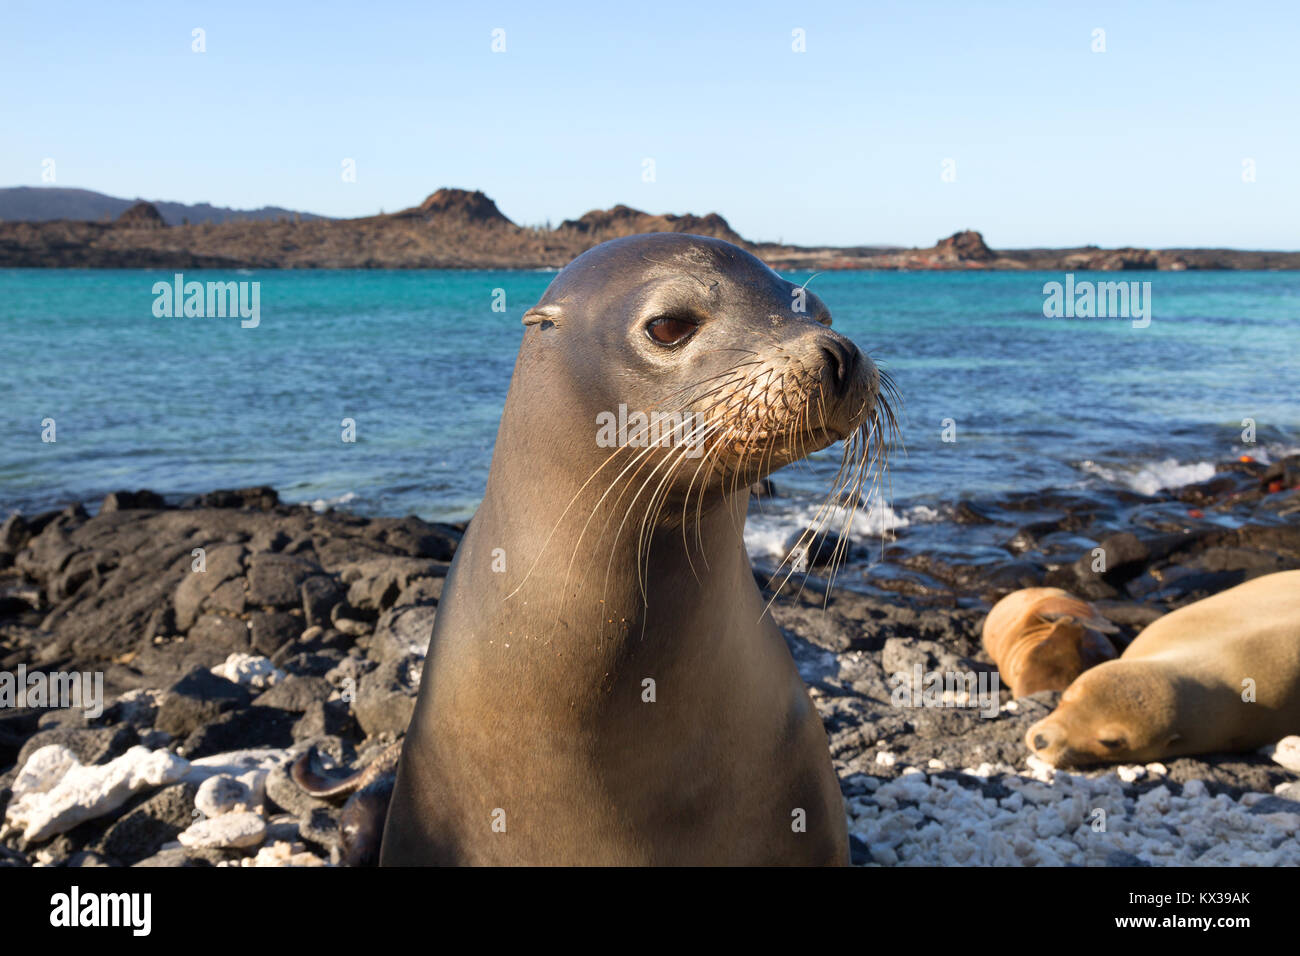 Lion de mer Galapagos (Zalophus wollebaeki) ; close up de tête, Chinese Hat Island, îles Galapagos Équateur Amérique du Sud Banque D'Images